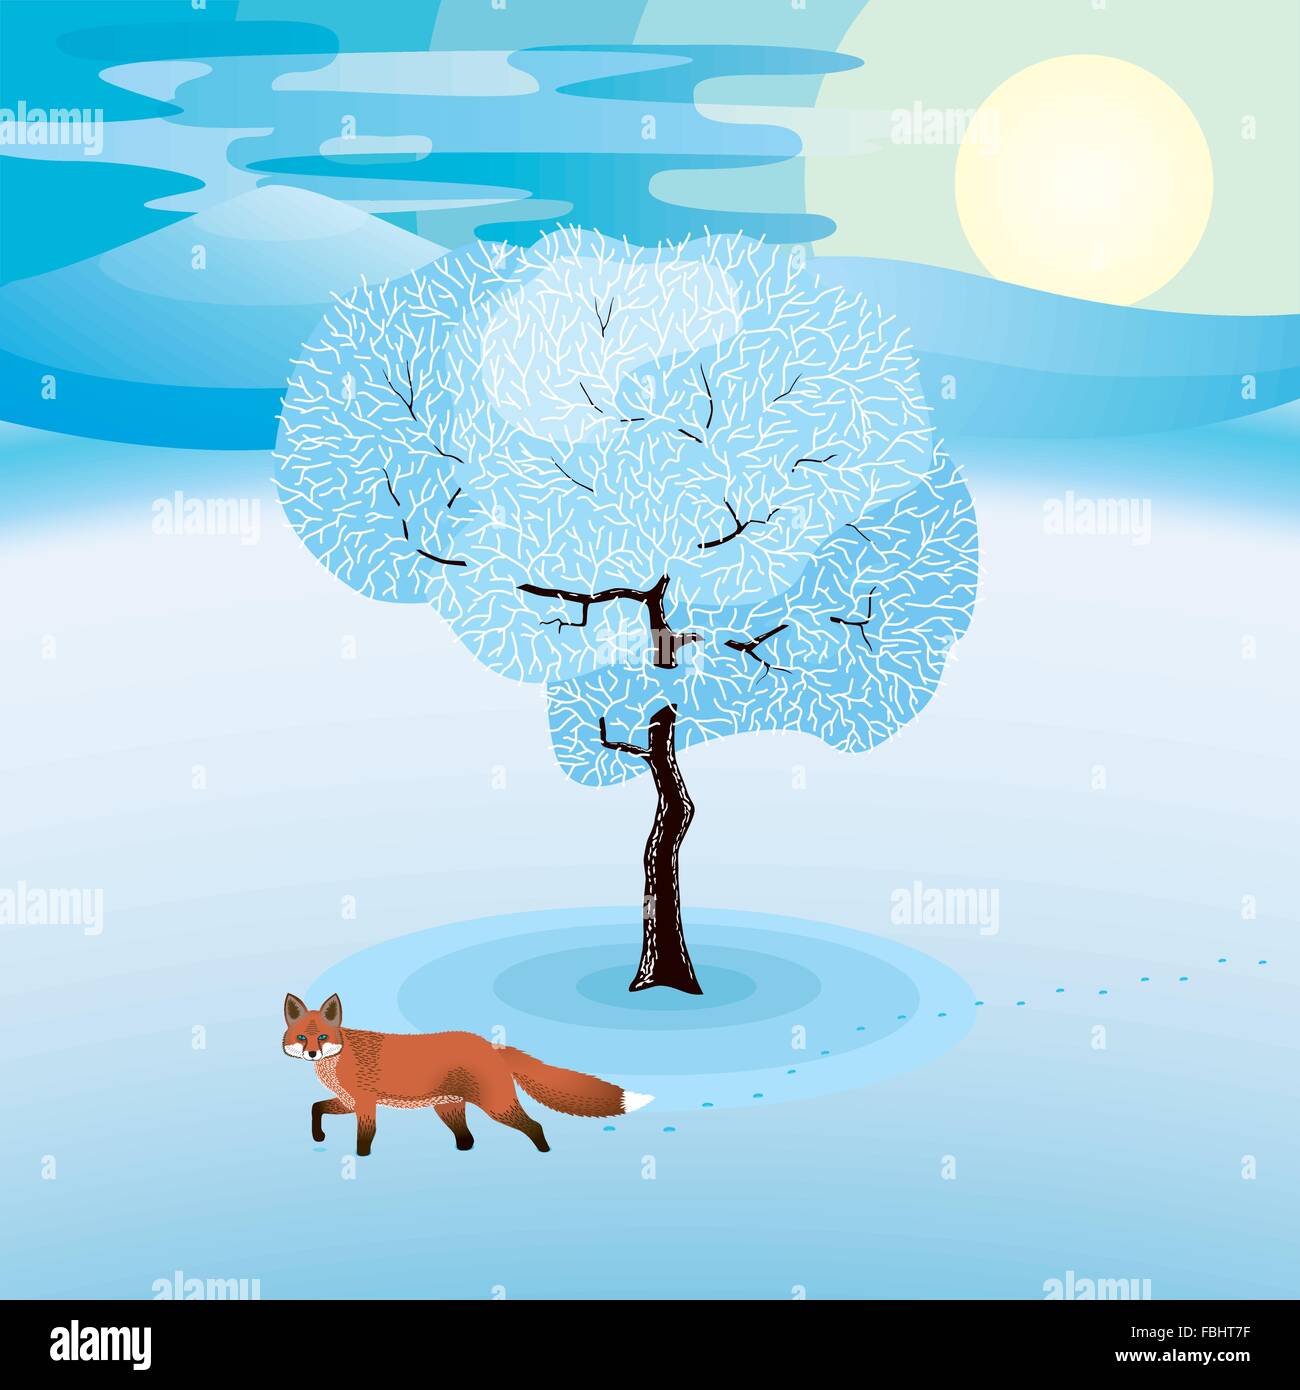 Paysage d'hiver avec des arbres gelés et red fox autour Illustration de Vecteur